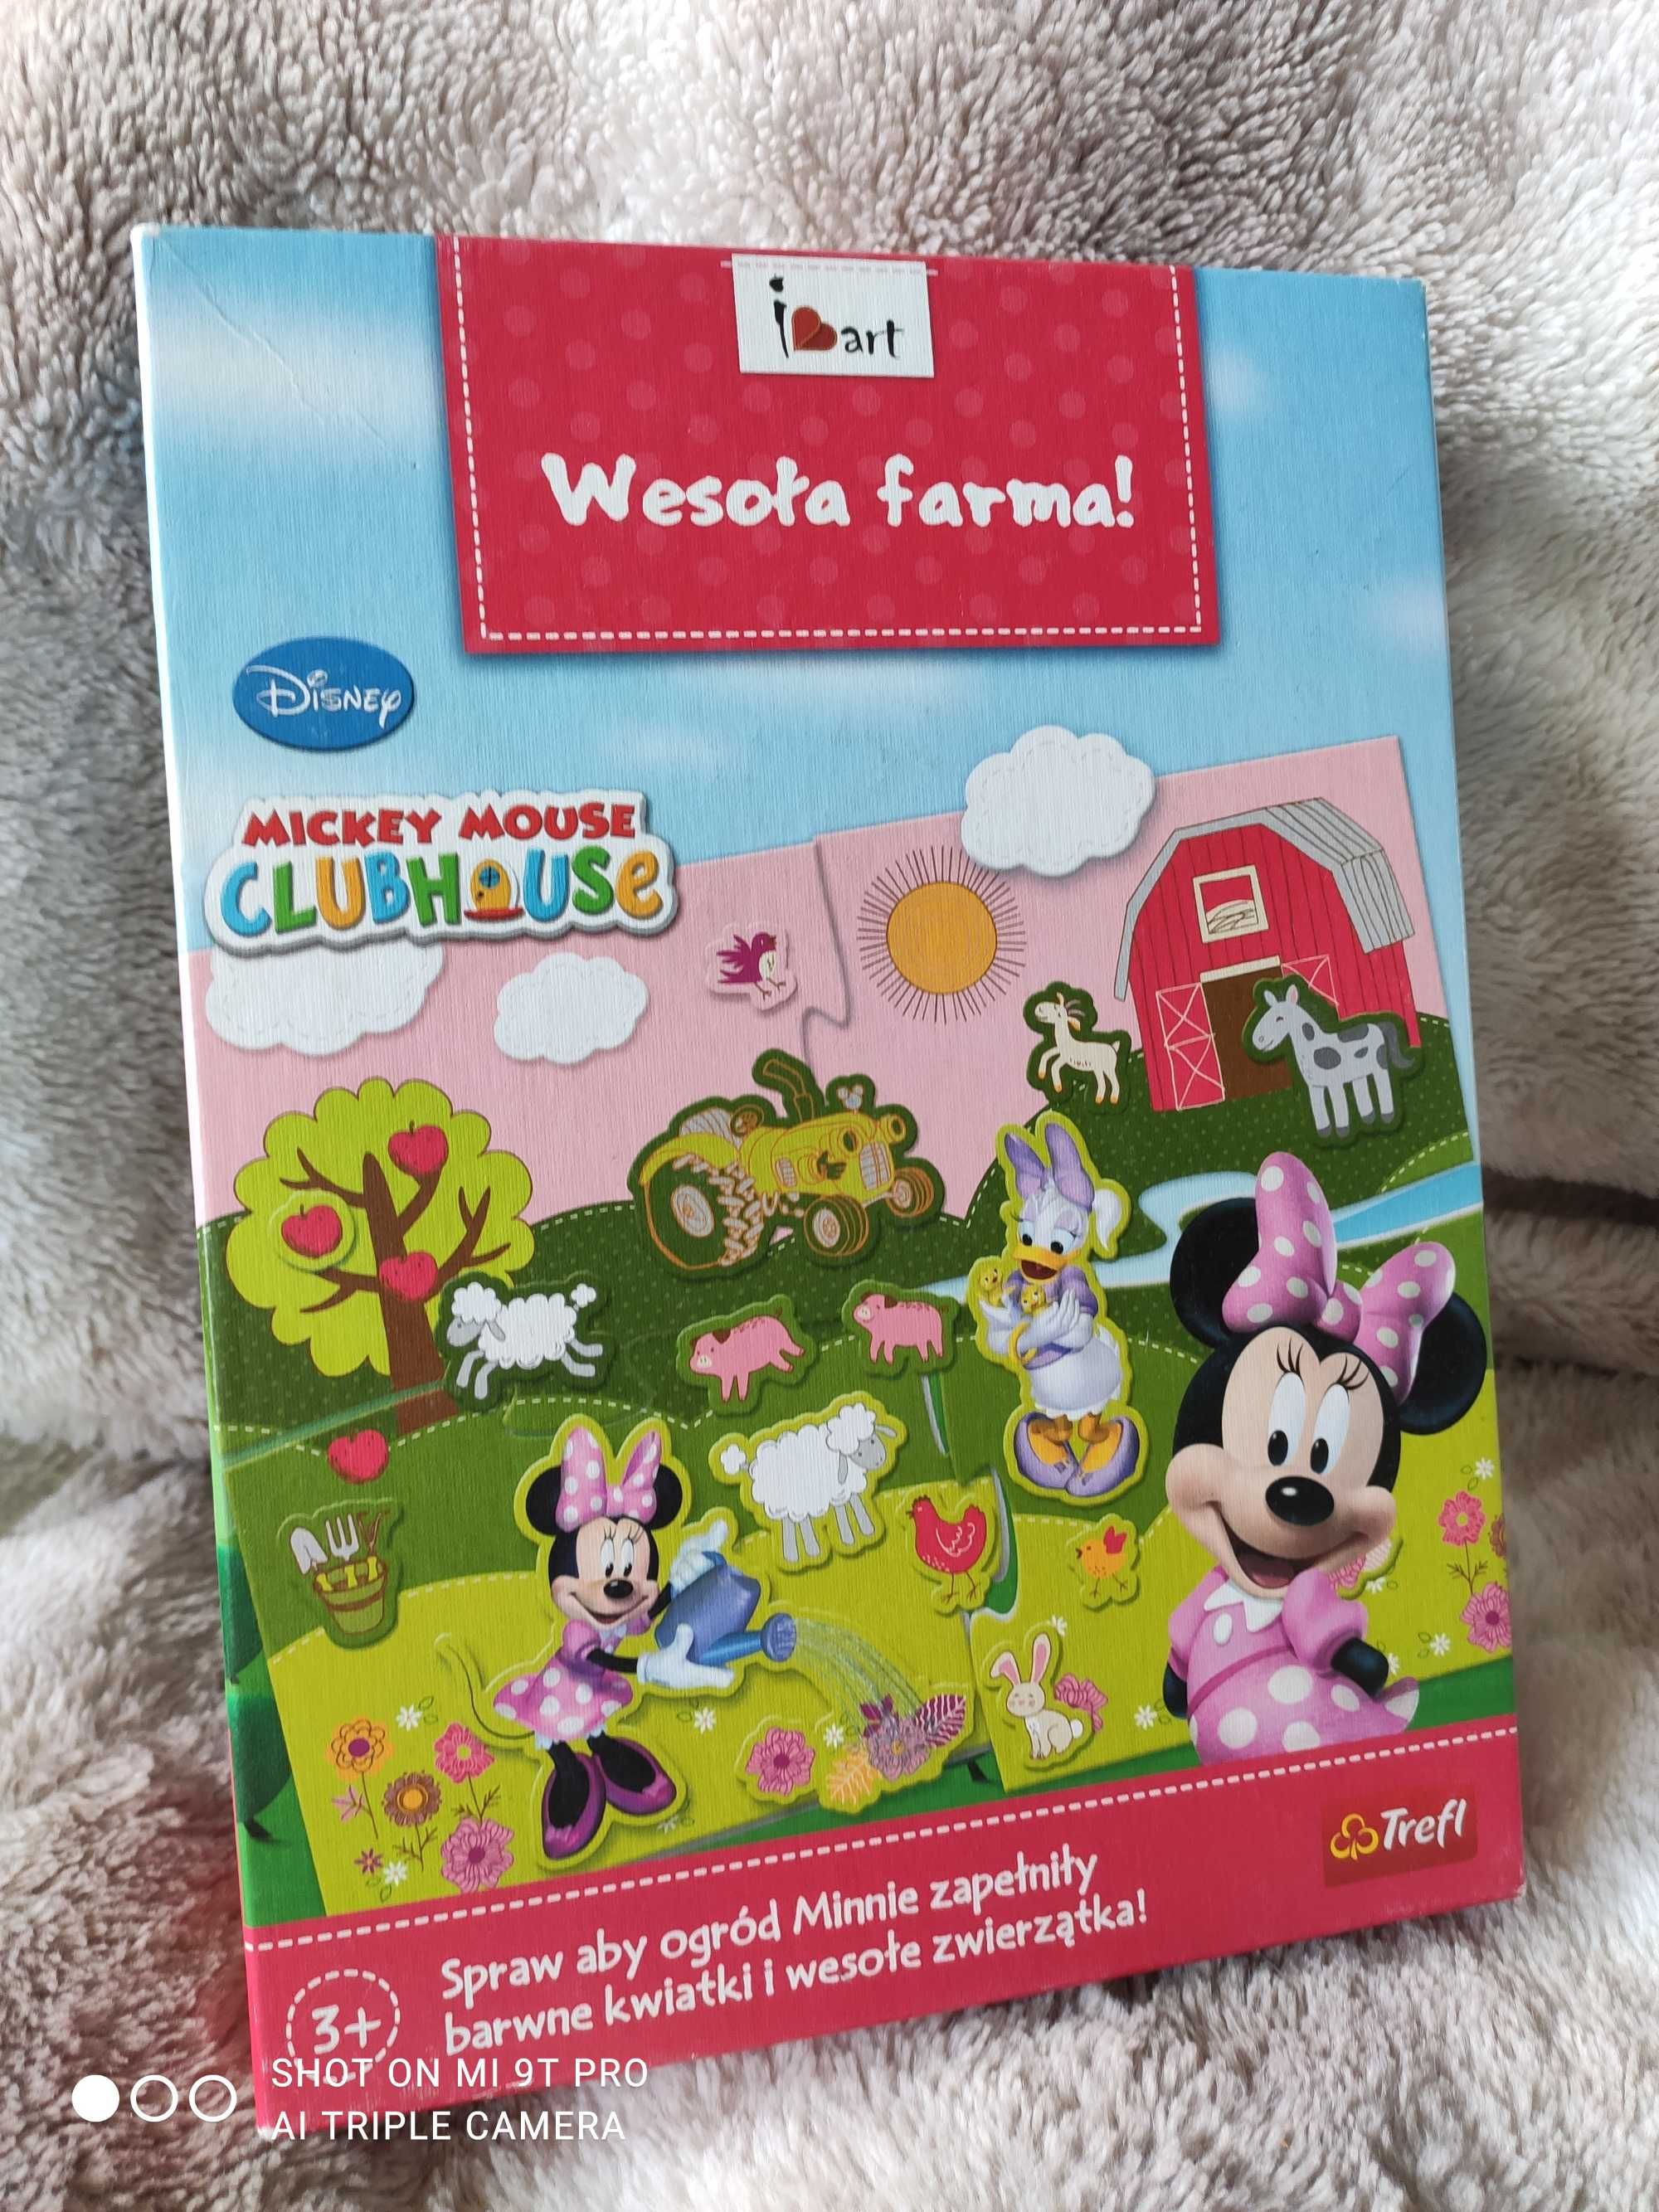 Zestaw Minnie Mouse, gra,wieszaczki książeczka,pamiętnik,karty do gry